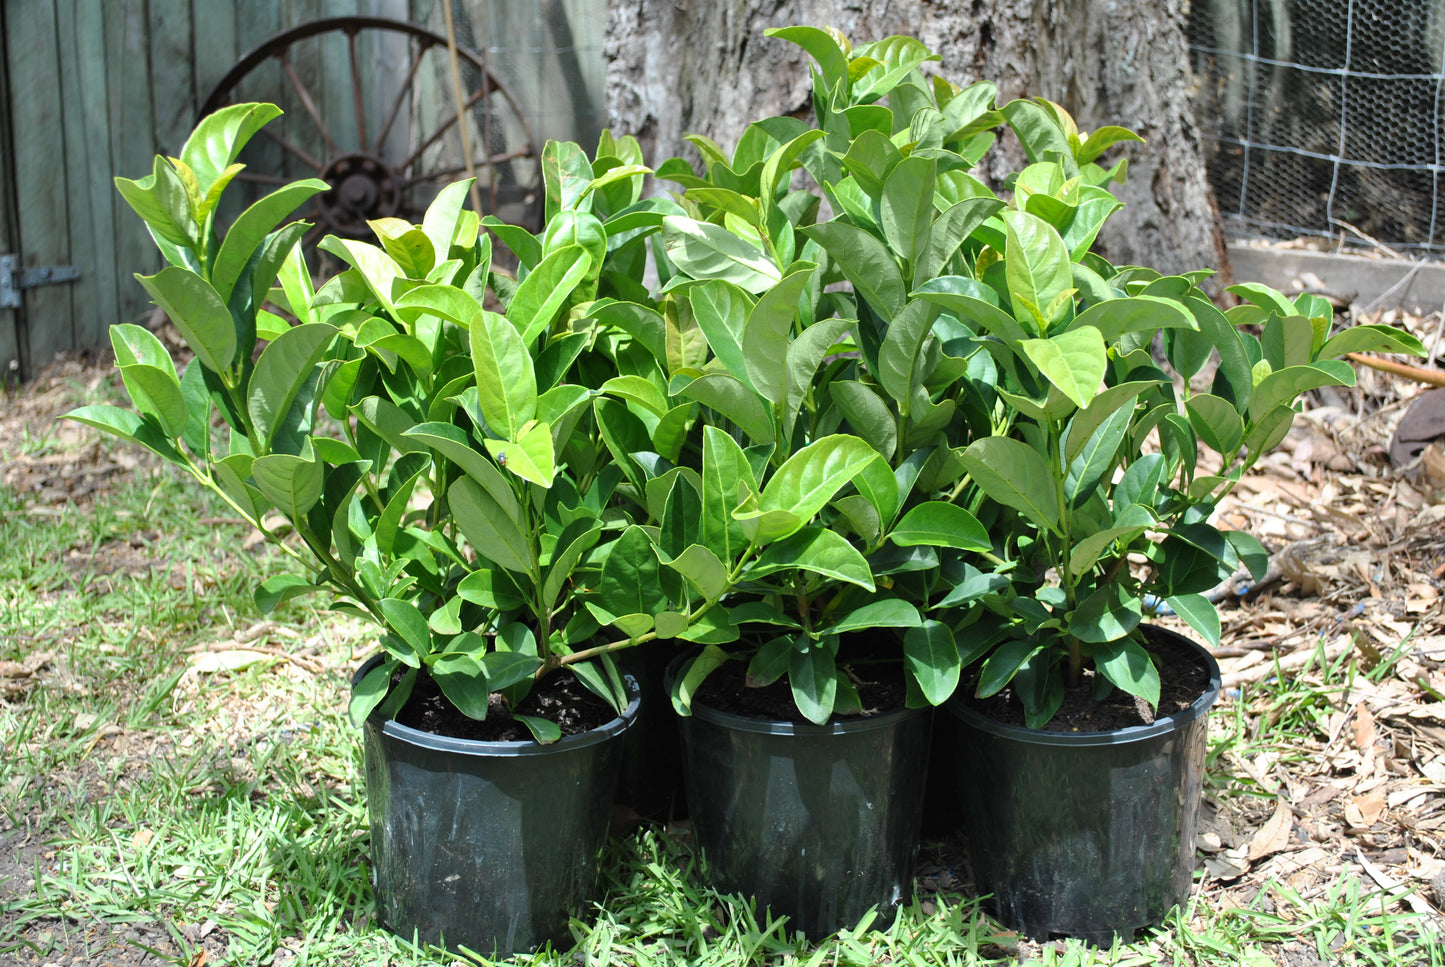 Lucious green foliage of the Viburnum odoratissimum 'Sweet Viburnum' in black pots